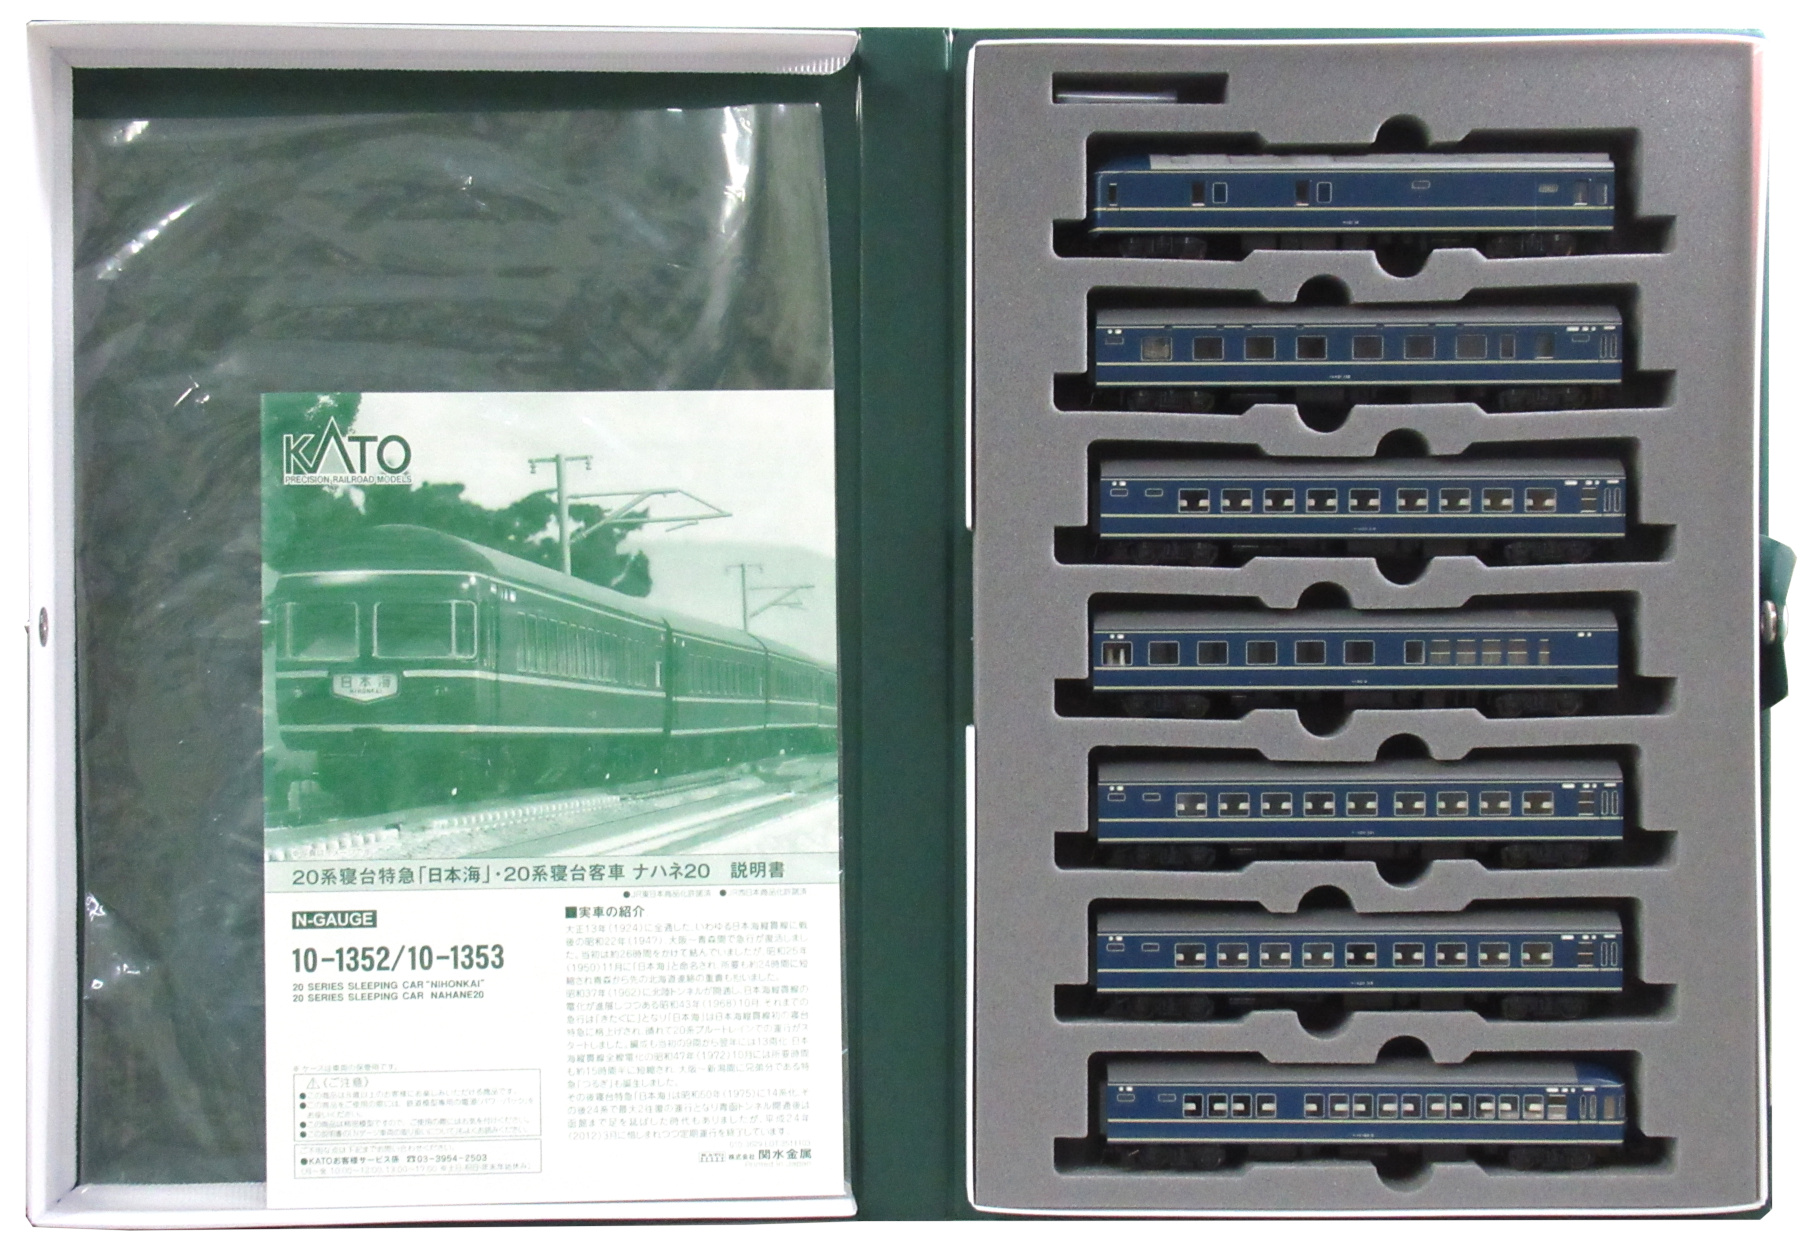 公式]鉄道模型(10-135220系 寝台特急「日本海」7両基本セット)商品詳細 